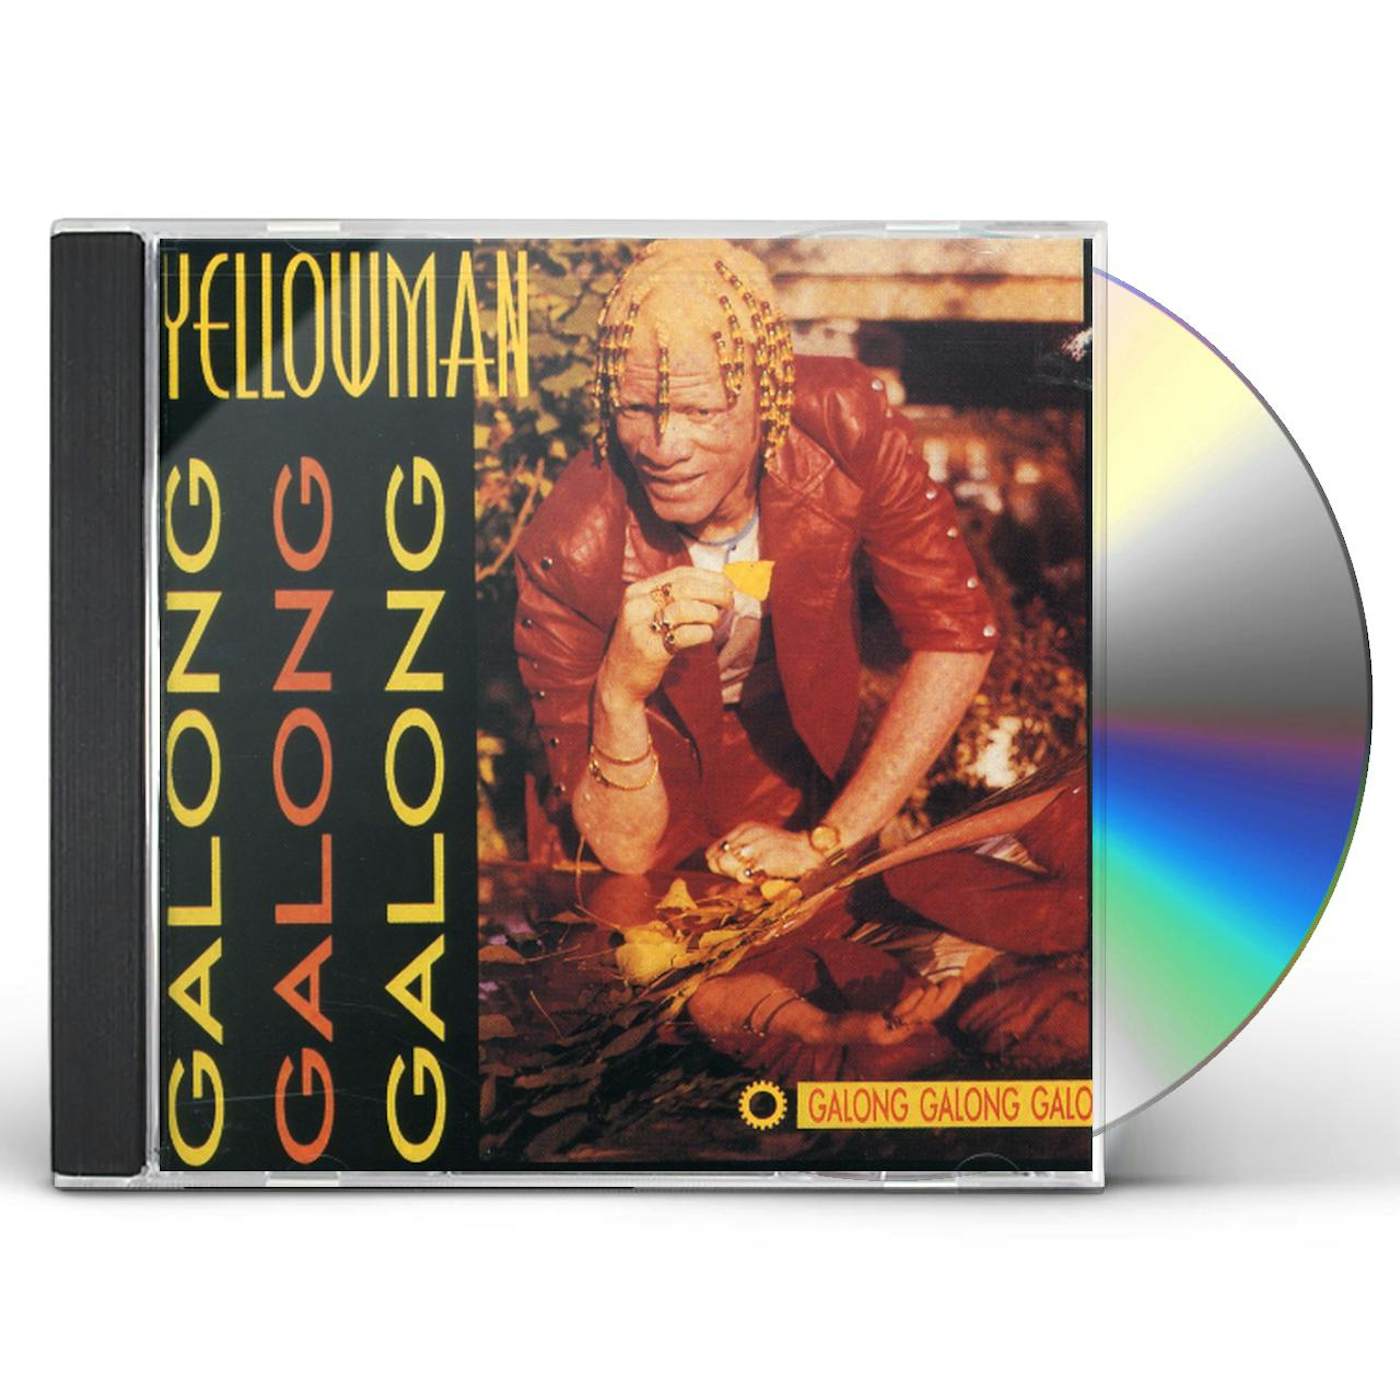 Yellowman GALONG GALONG GALONG CD